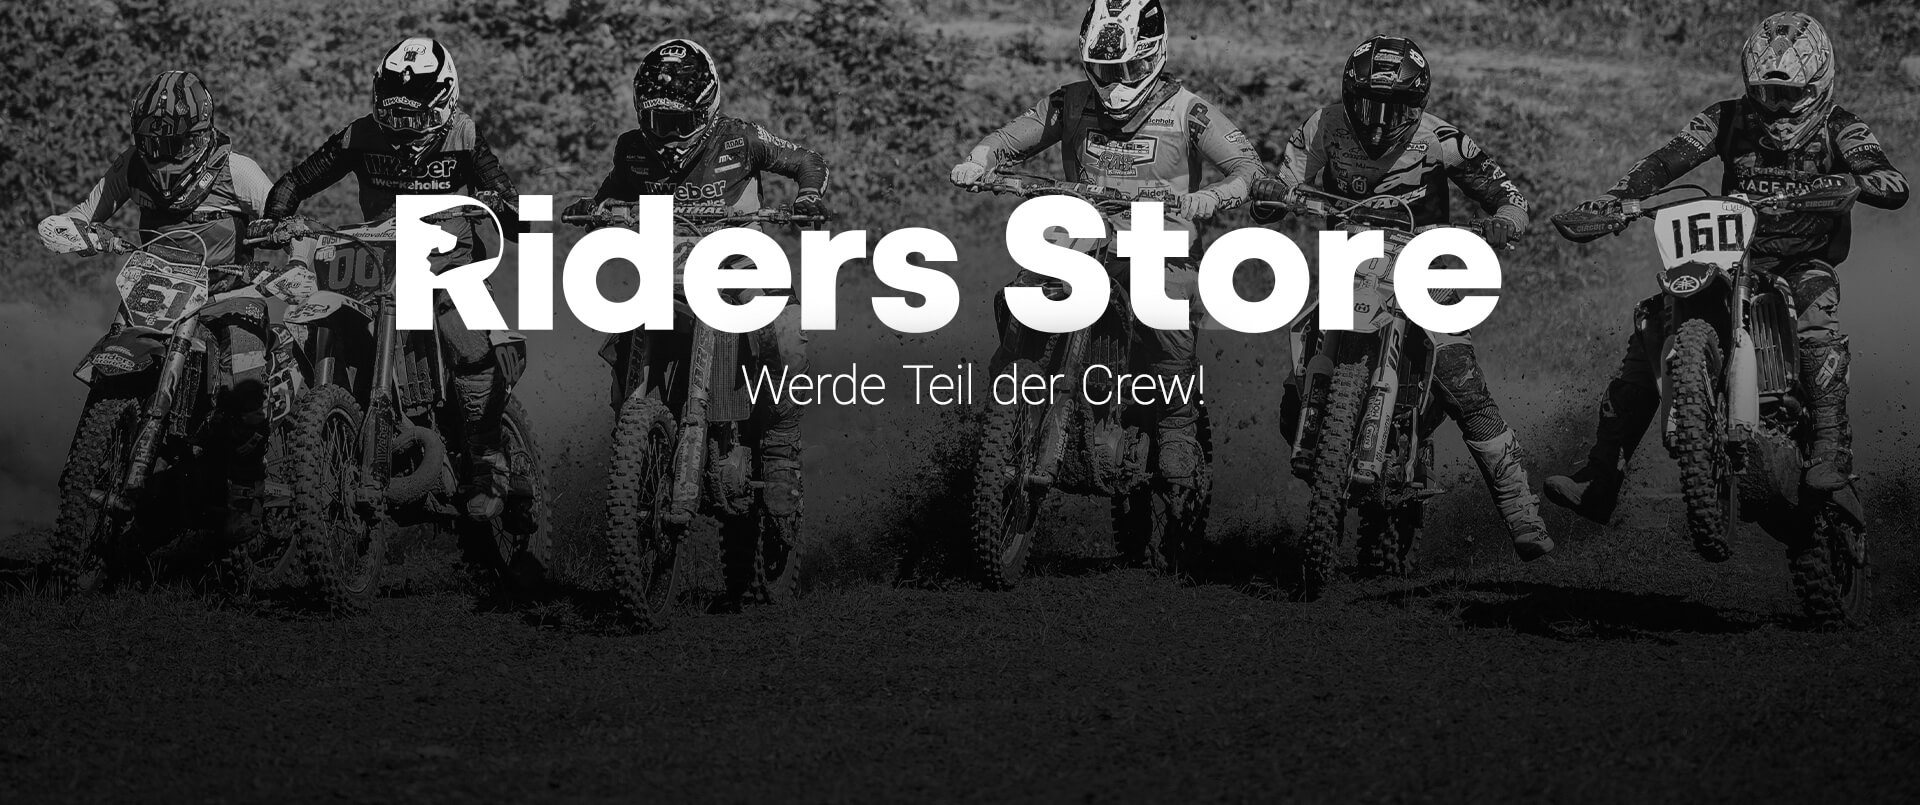 Werde Riders-Store Teamfahrer